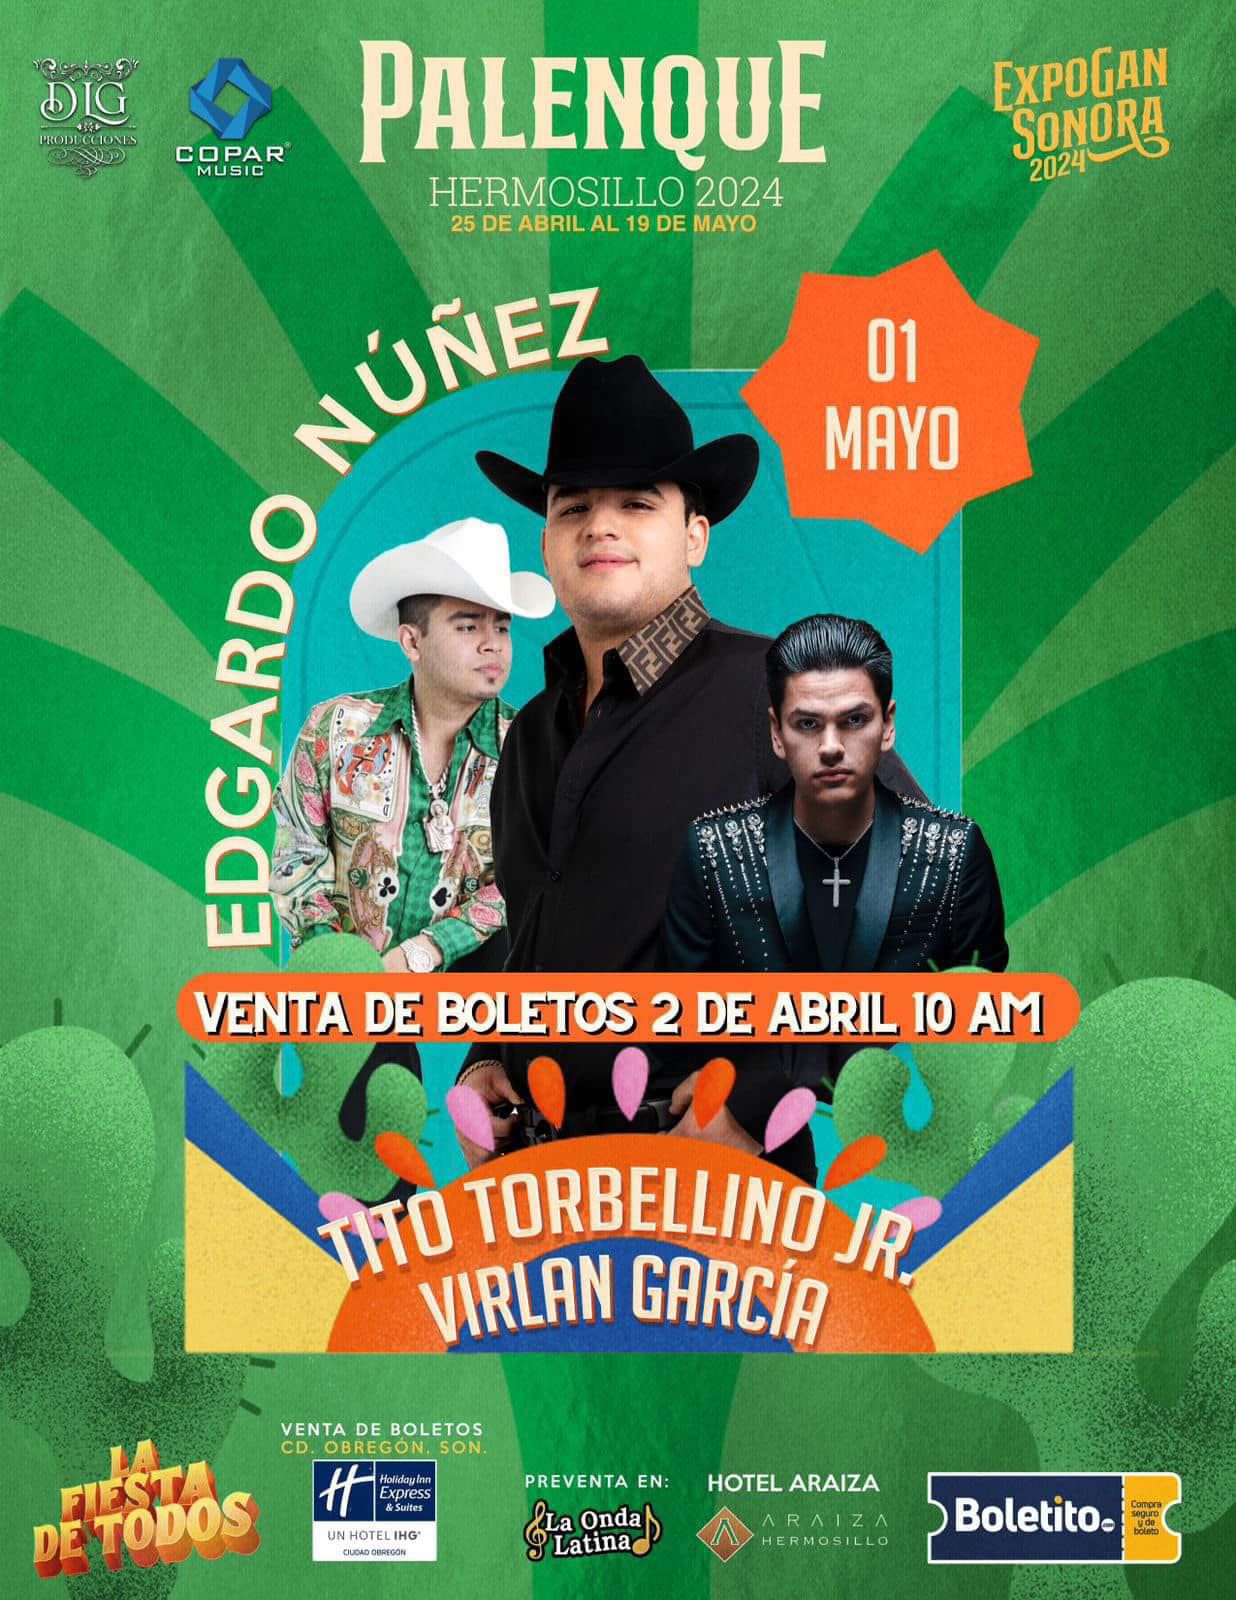 Edgardo Núñez, Tito Torbellino Junior y Virlan García se presentarán este 01 de Mayo en el palenque | Foto: Facebook (@Expogansonora)